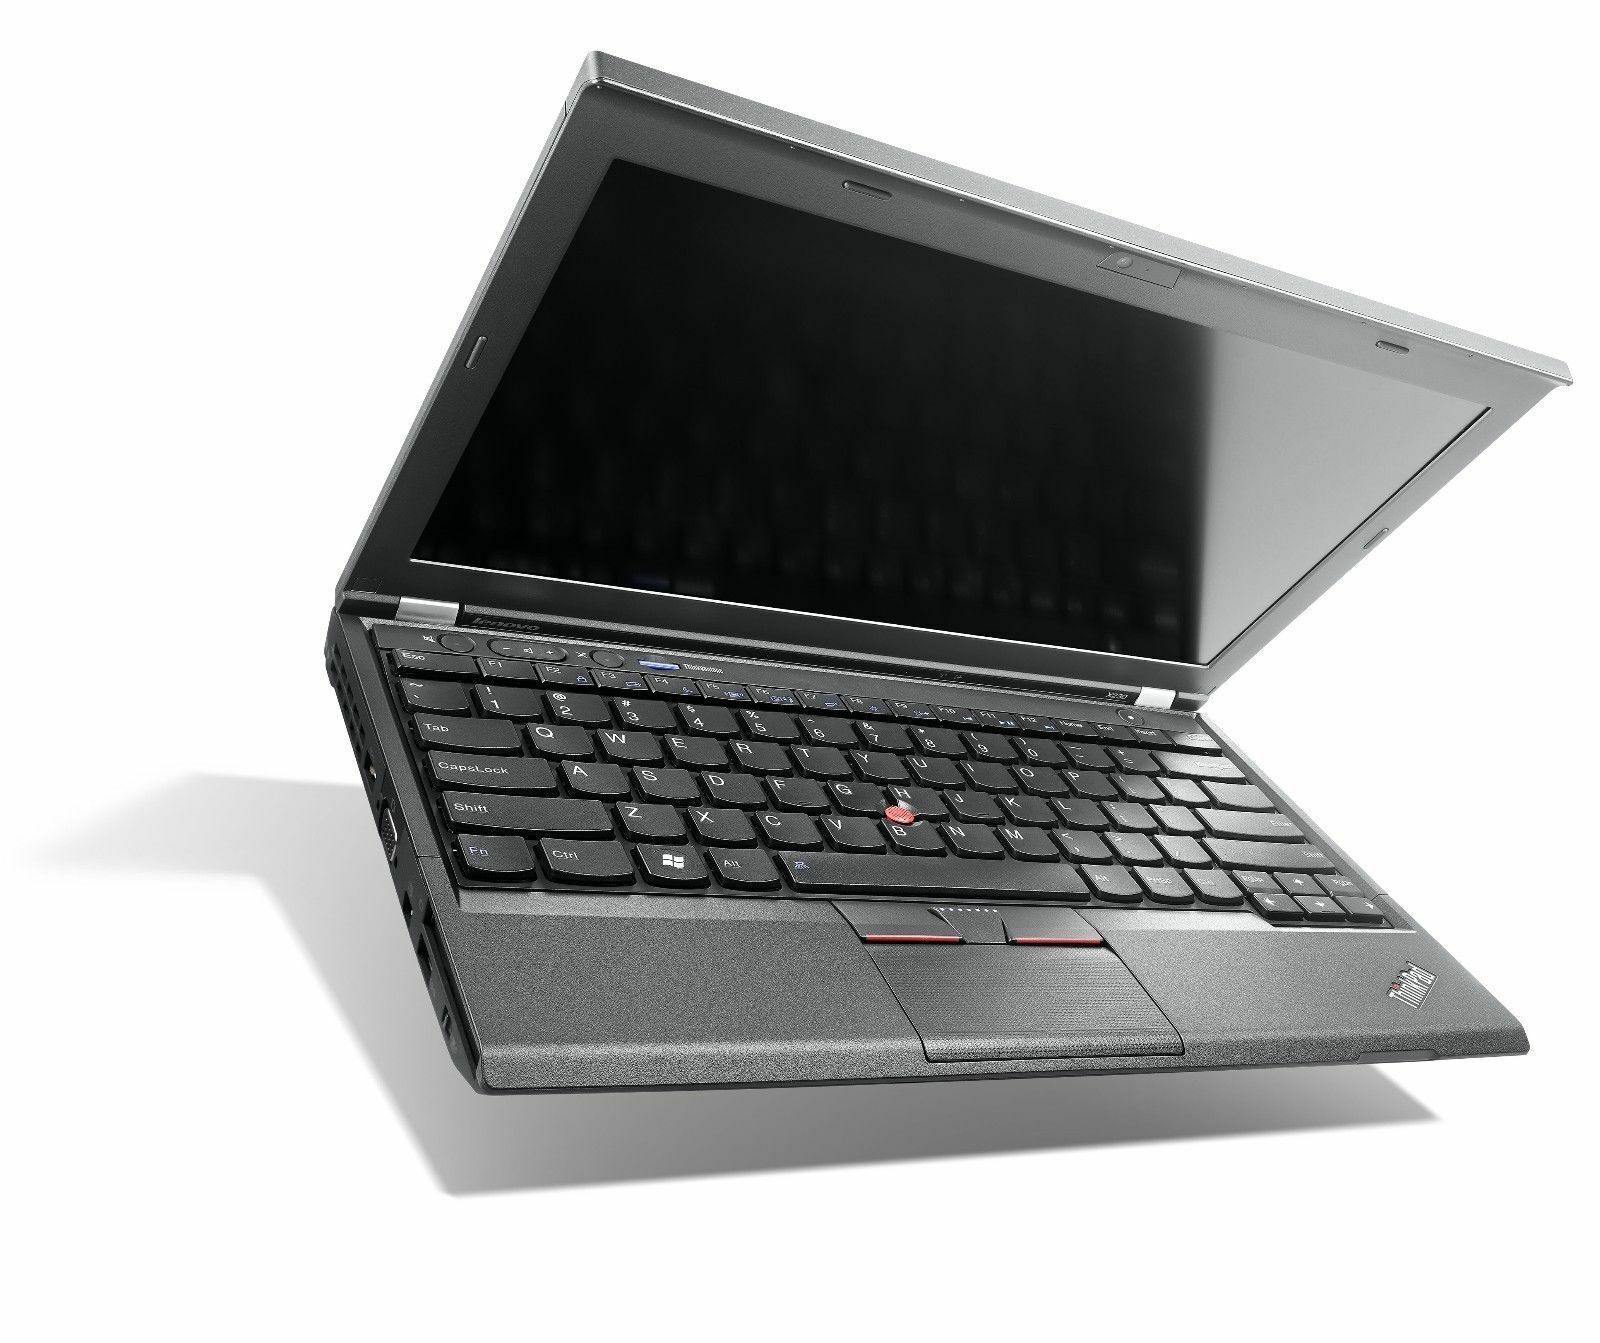 Lenovo ThinkPad X230 Intel i5 3320M 2.60Ghz 4GB RAM 128GB SSD 12.5" NO OS Image 1